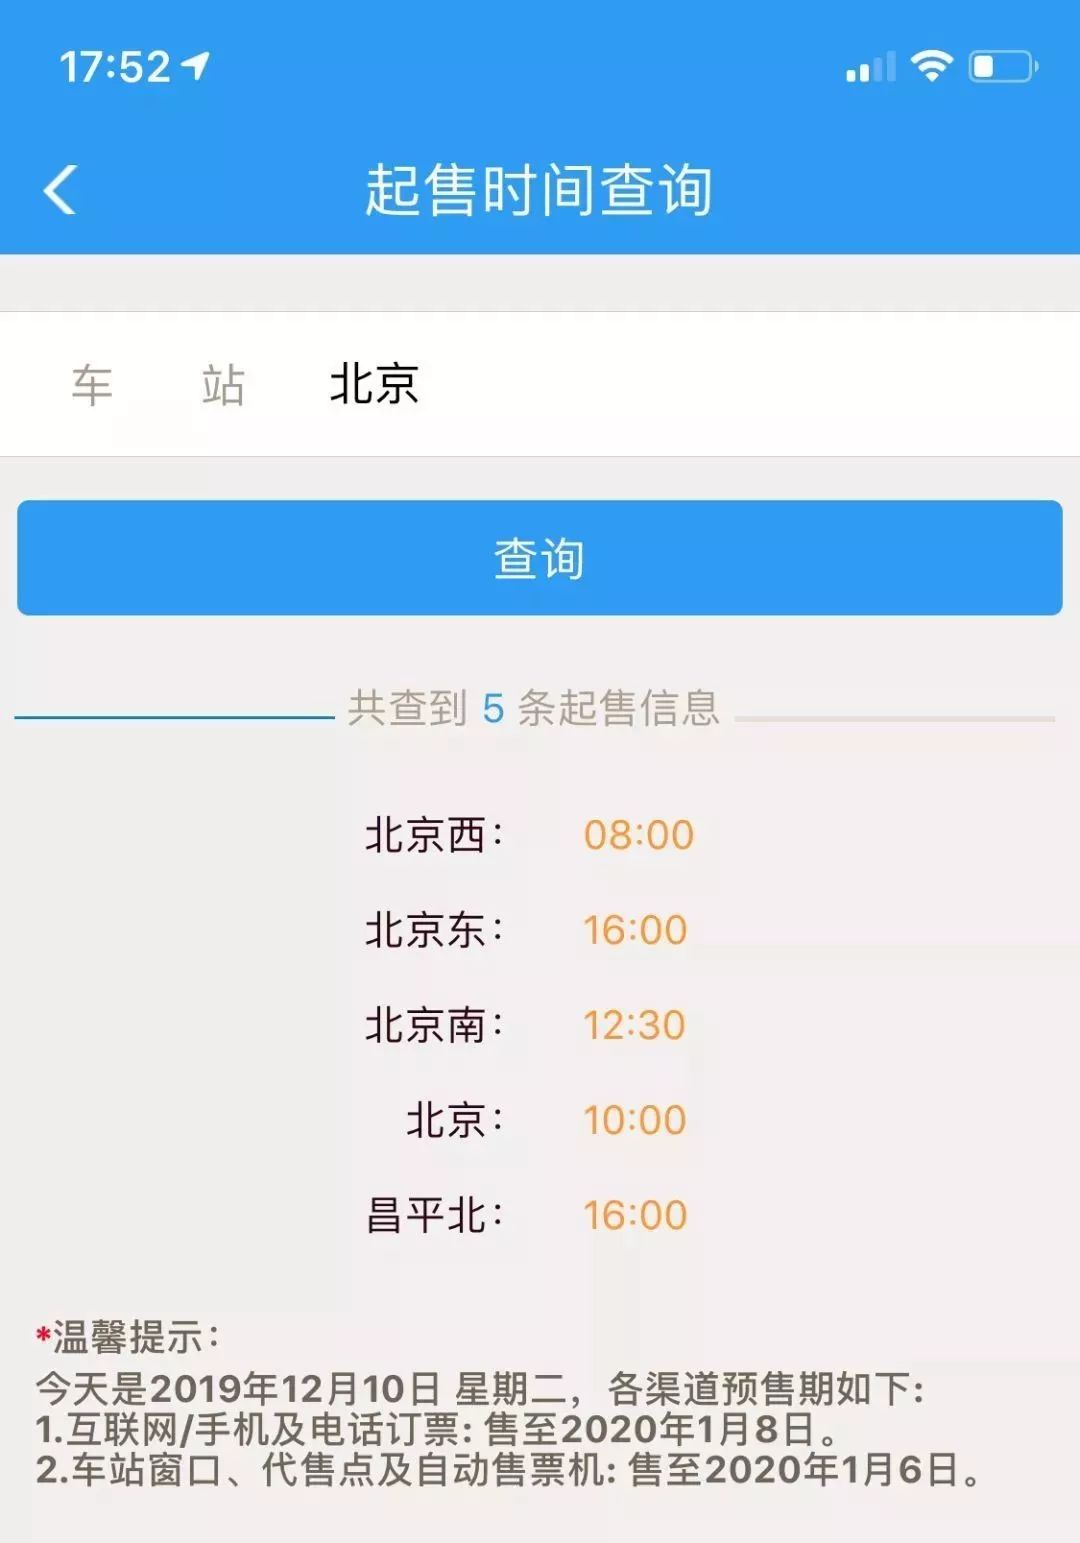 中国铁2022世界杯押注路网12306服务时间